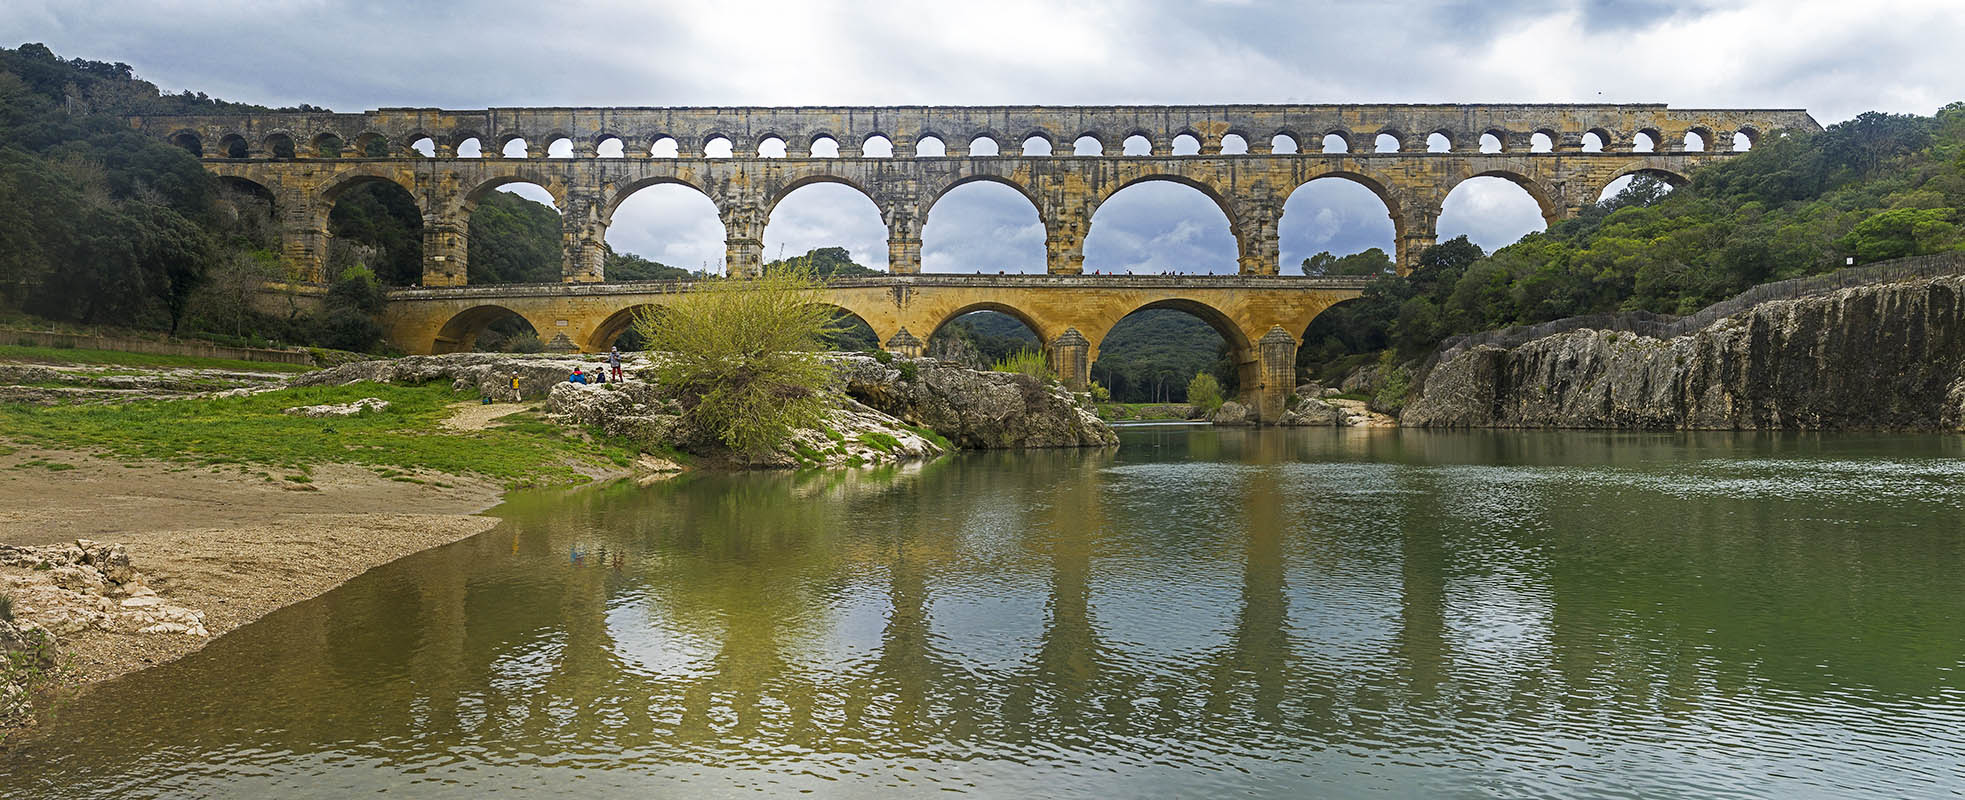 Pont-de-gard-roman-aqueduct